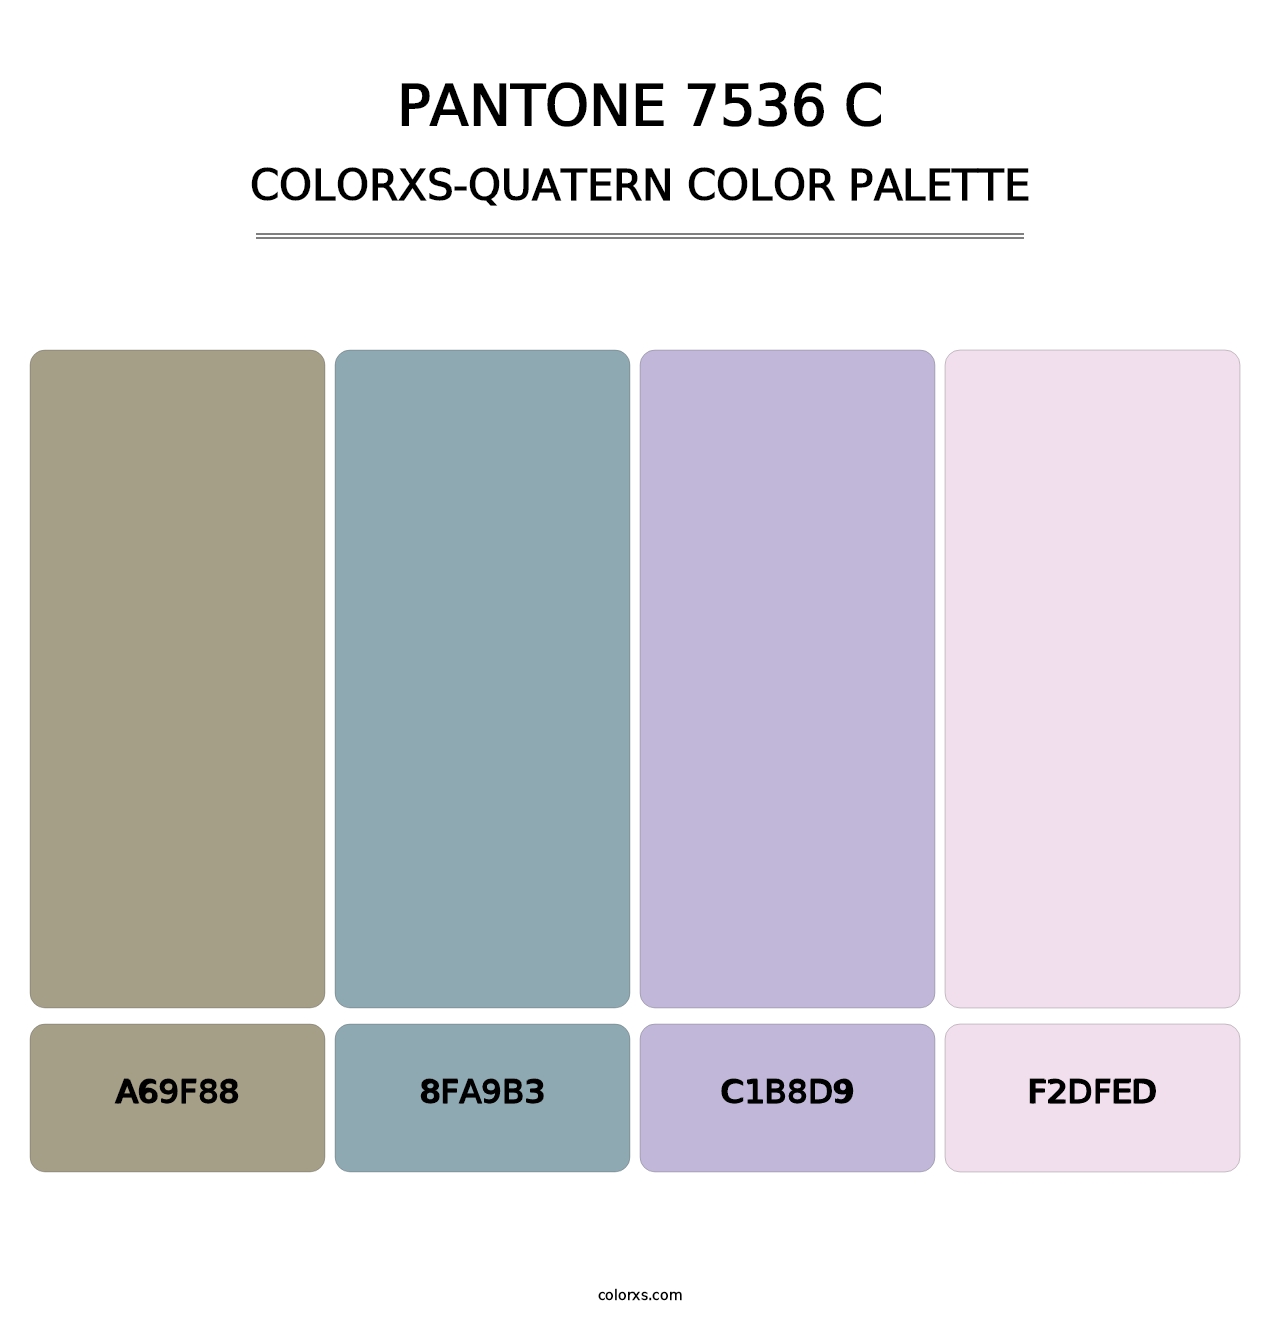 PANTONE 7536 C - Colorxs Quatern Palette